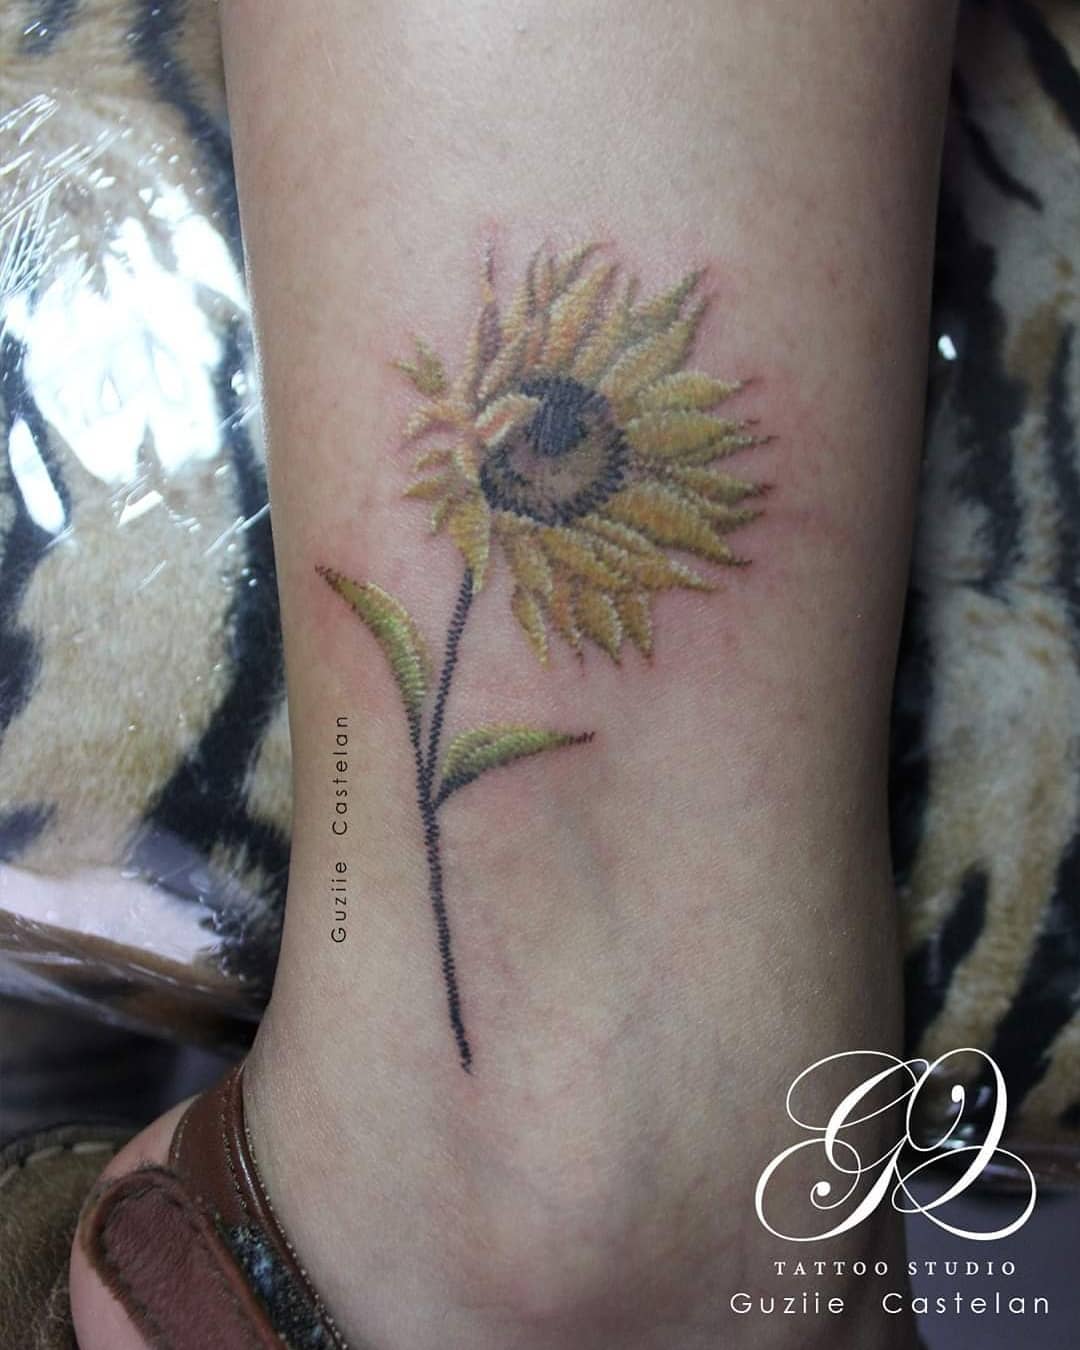 Beautiful image of a small sunflower tattoo